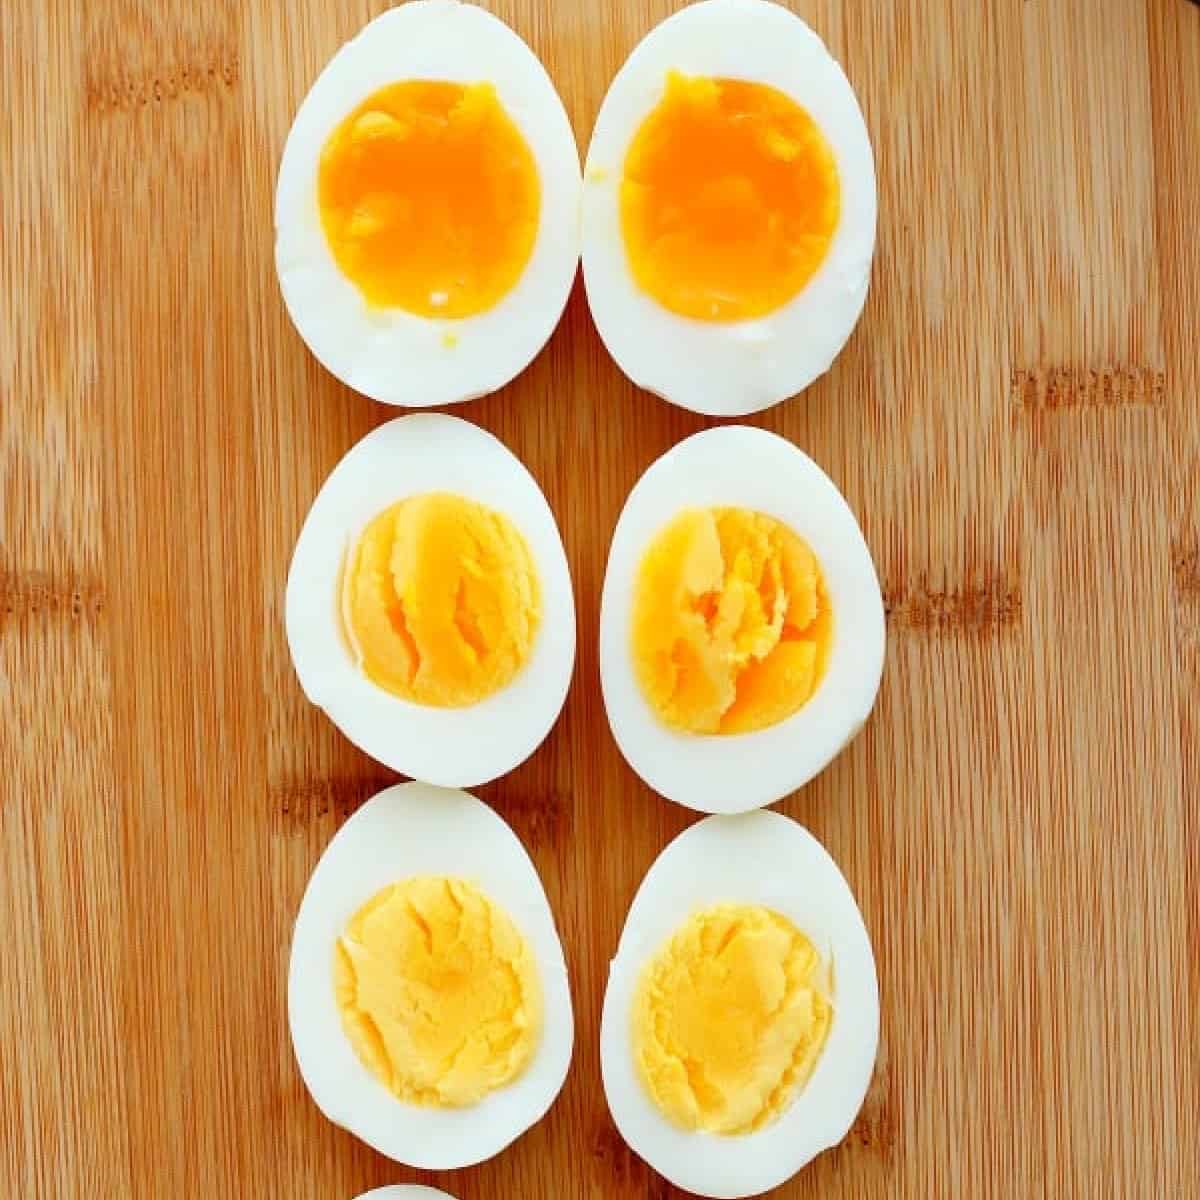 Easy Boiled Eggs: How Long To Boil An Egg? Soft, Medium & Hard Boiled